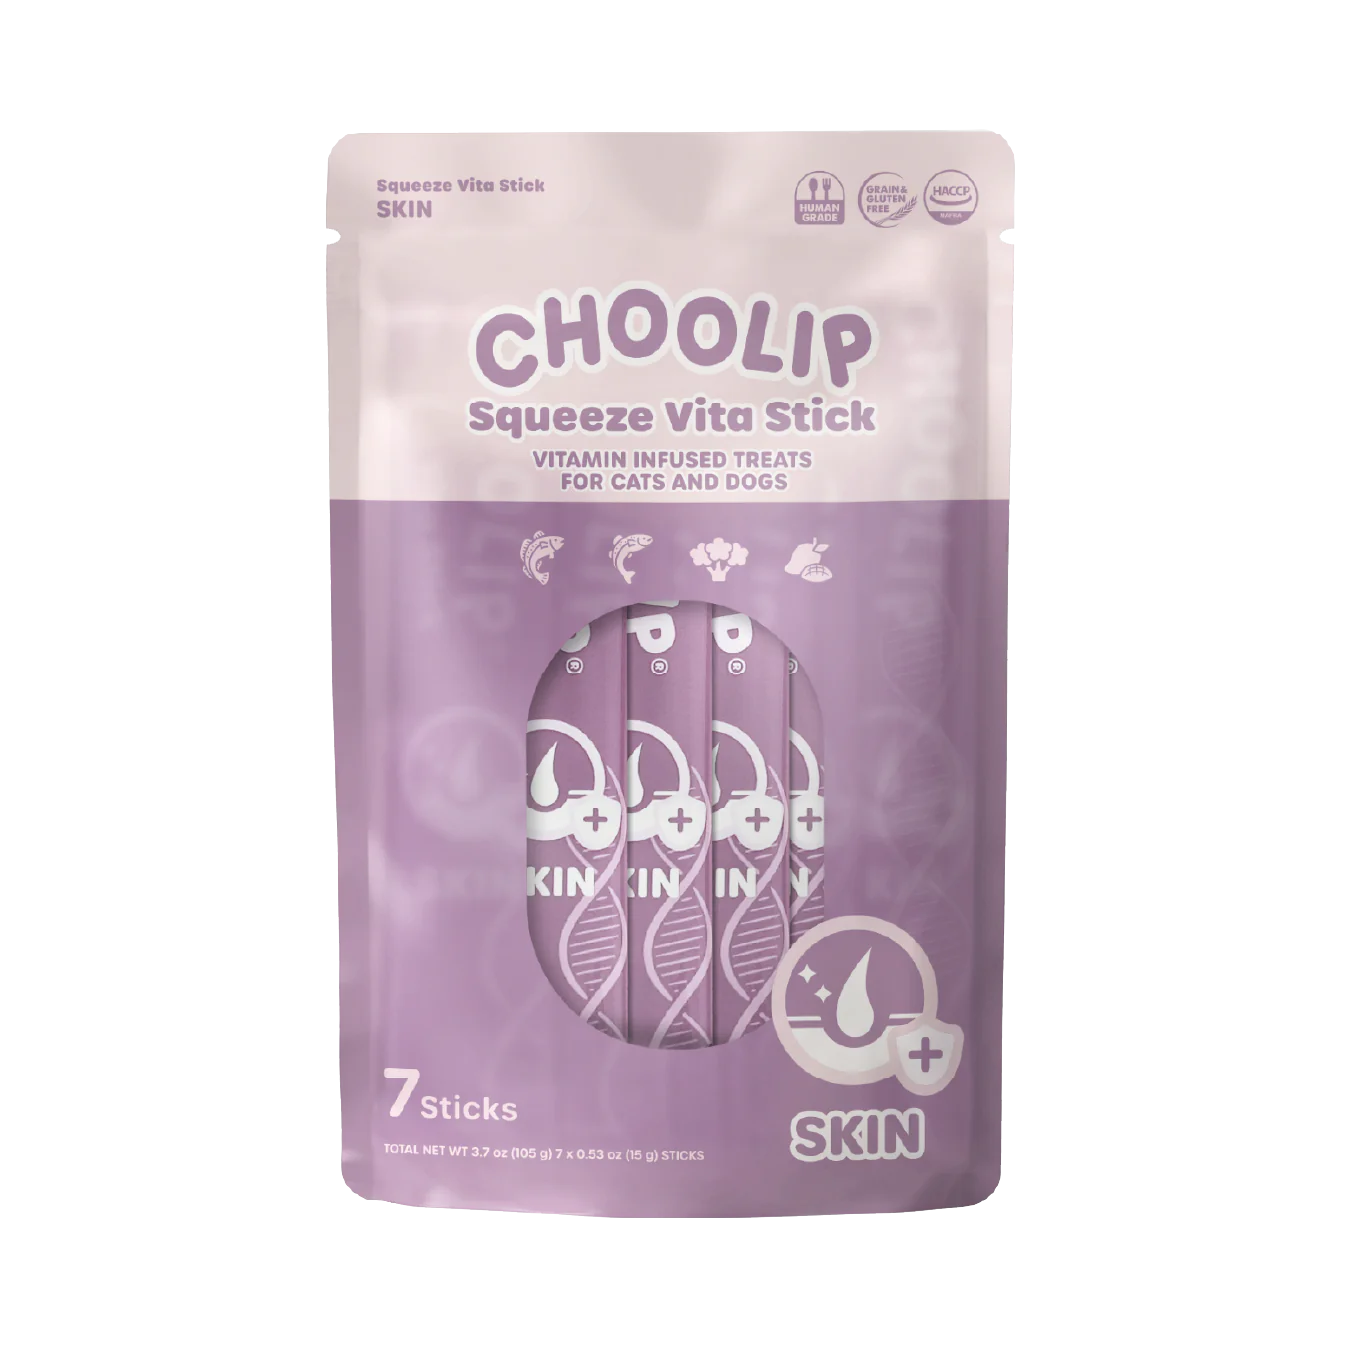 Choolip Squeeze Vita Stick Pouch 7 Sticks